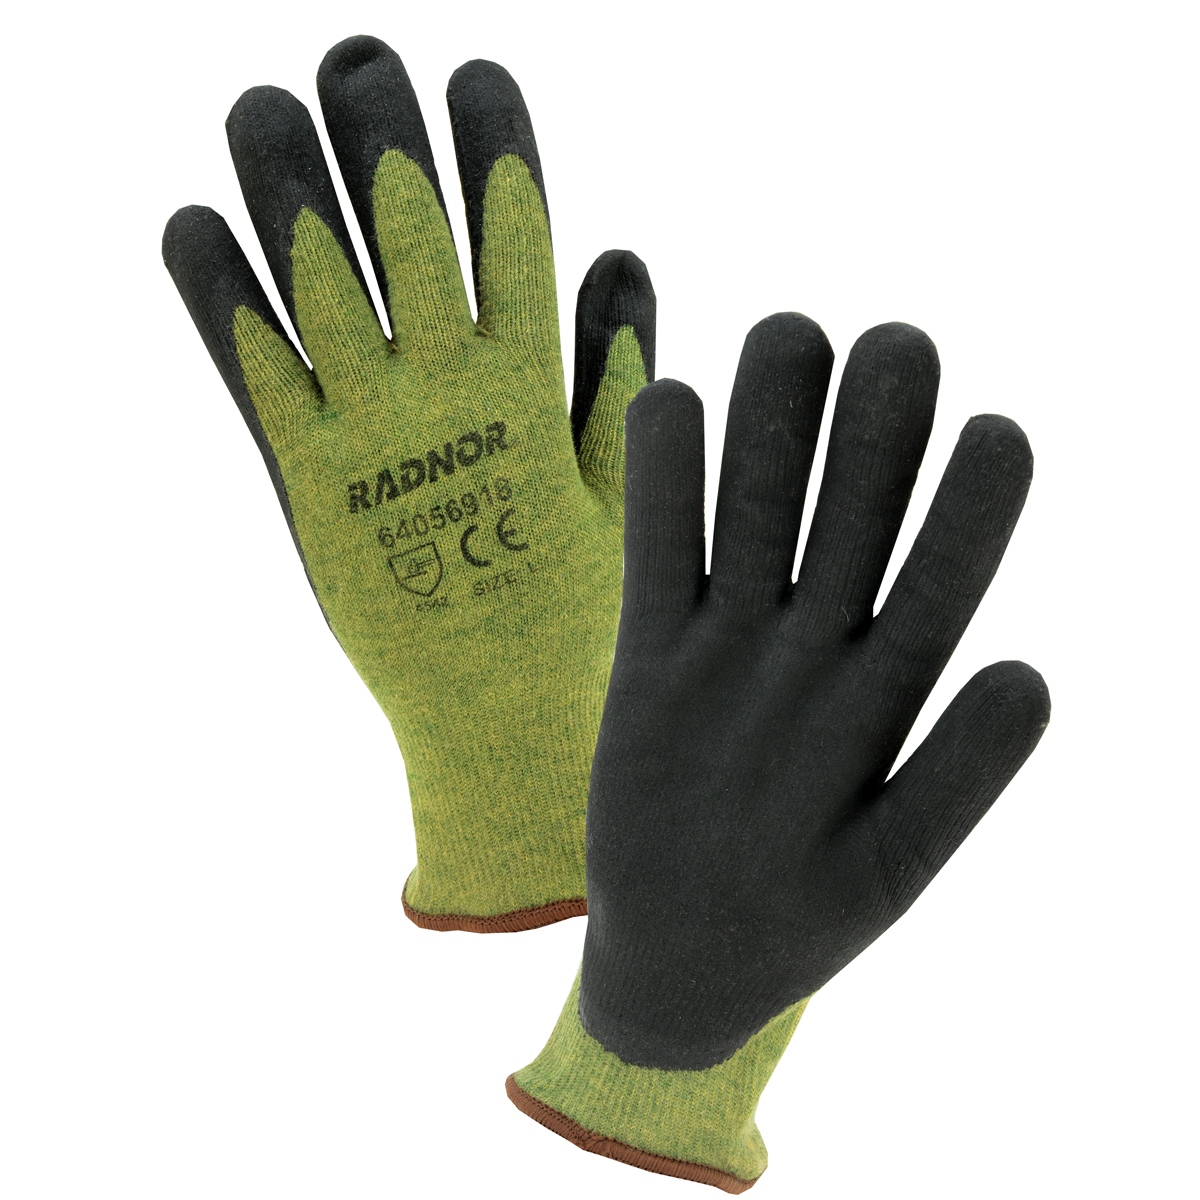 https://www.airgas.com/medias/Product-Images-Radnor-Gloves-64056918.jpg?context=bWFzdGVyfHByb2R1Y3R8Njc0ODg2fGltYWdlL2pwZWd8cHJvZHVjdC9oNDUvaDhlLzExNjcwNDk0MTE3OTE4LmpwZ3wyNDdmZjExMjAwYjc3Y2JkODAzY2FiZmM2ZWFkZGM5NGM1N2RhYzNmNjhhMDU5NWUyNDdiNTQ0Nzc5Y2FhZjUz